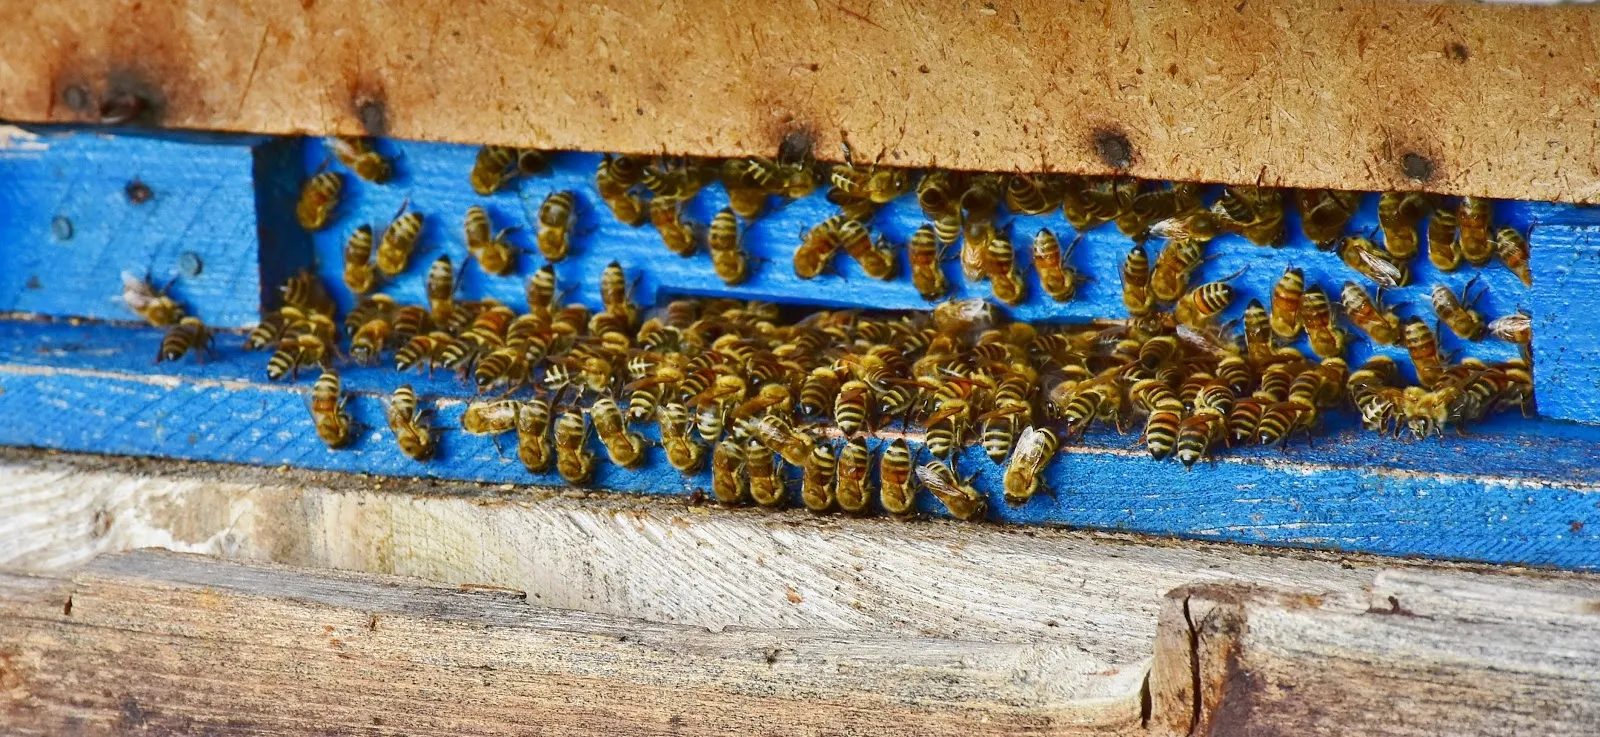 巣箱の入り口に集まる多くの蜜蜂